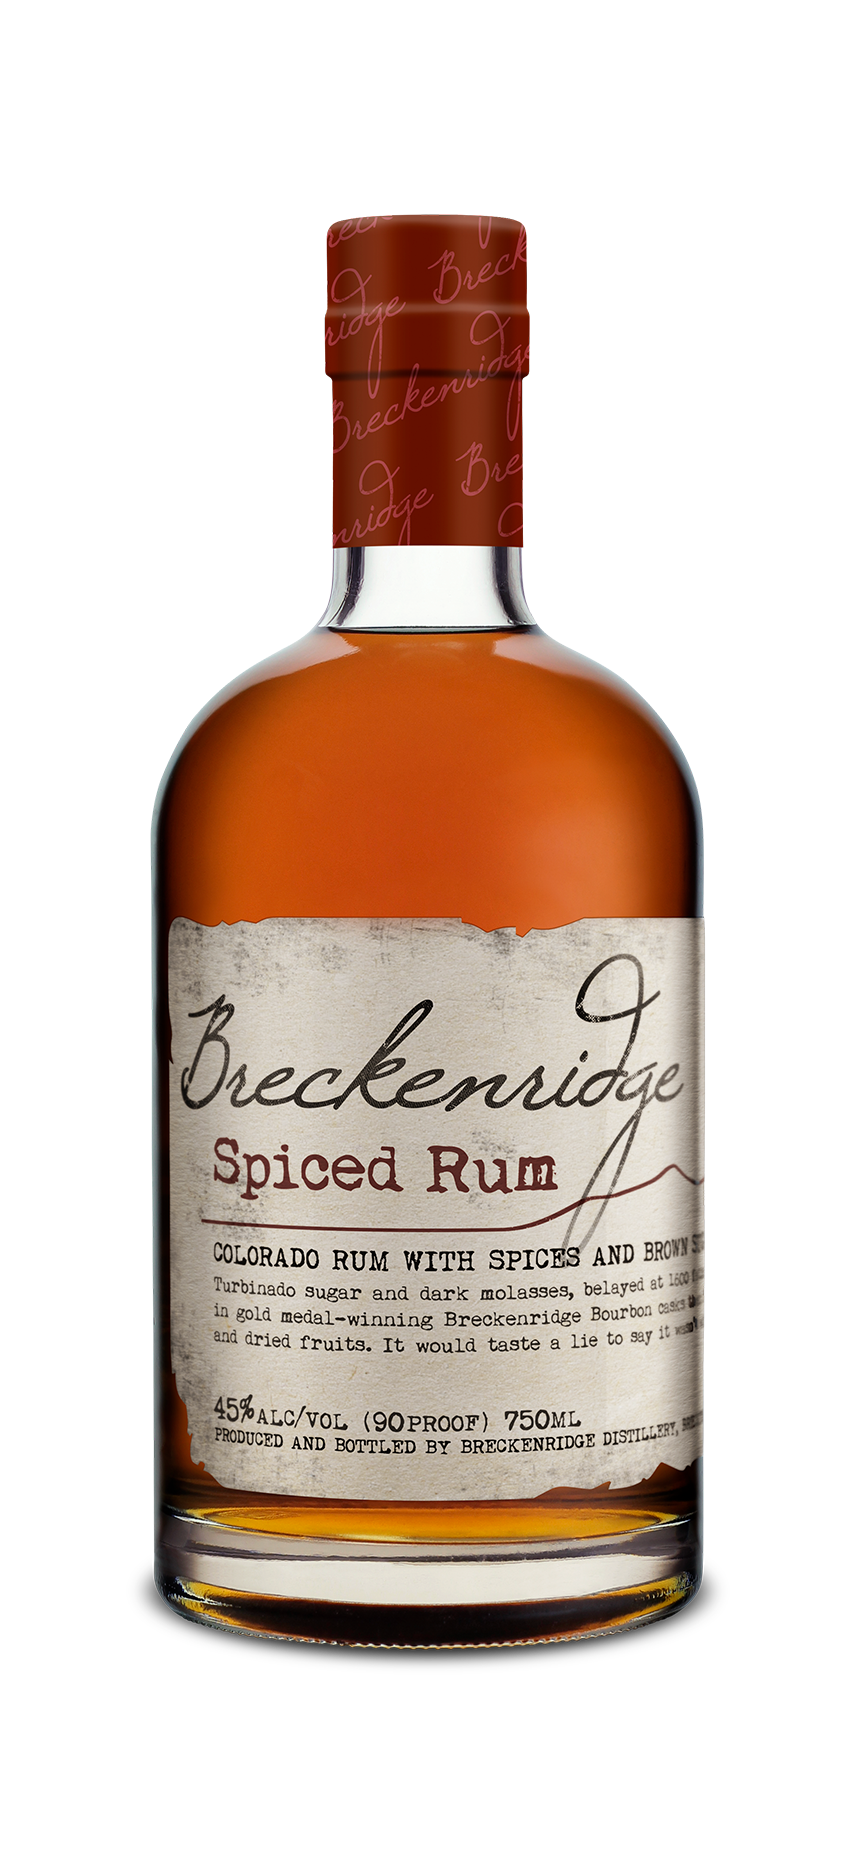 Breckenridge Spiced Rum bottle 750 mL